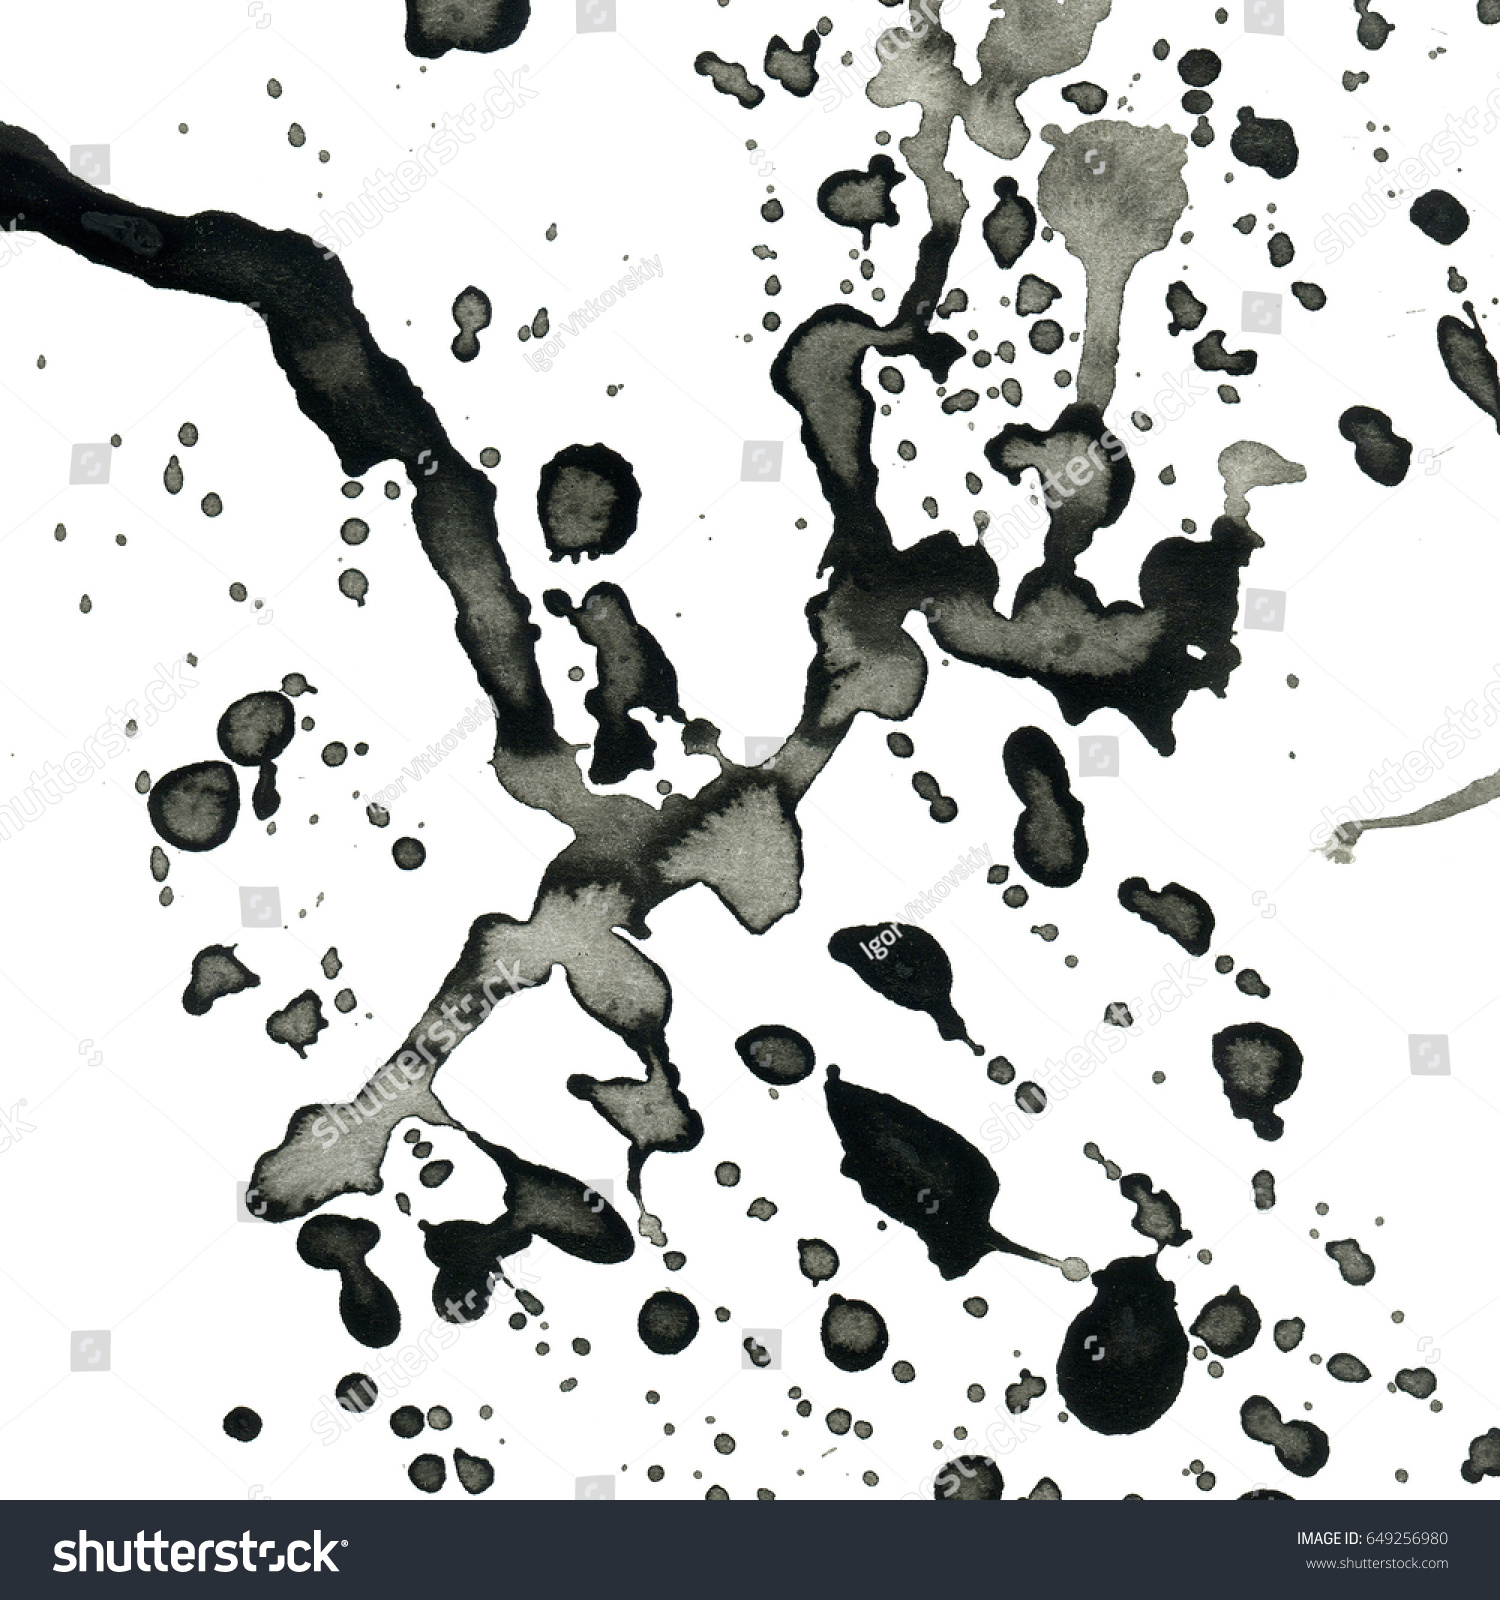 Isolated Black Ink Splatter Paint Effect Stock Illustration ...